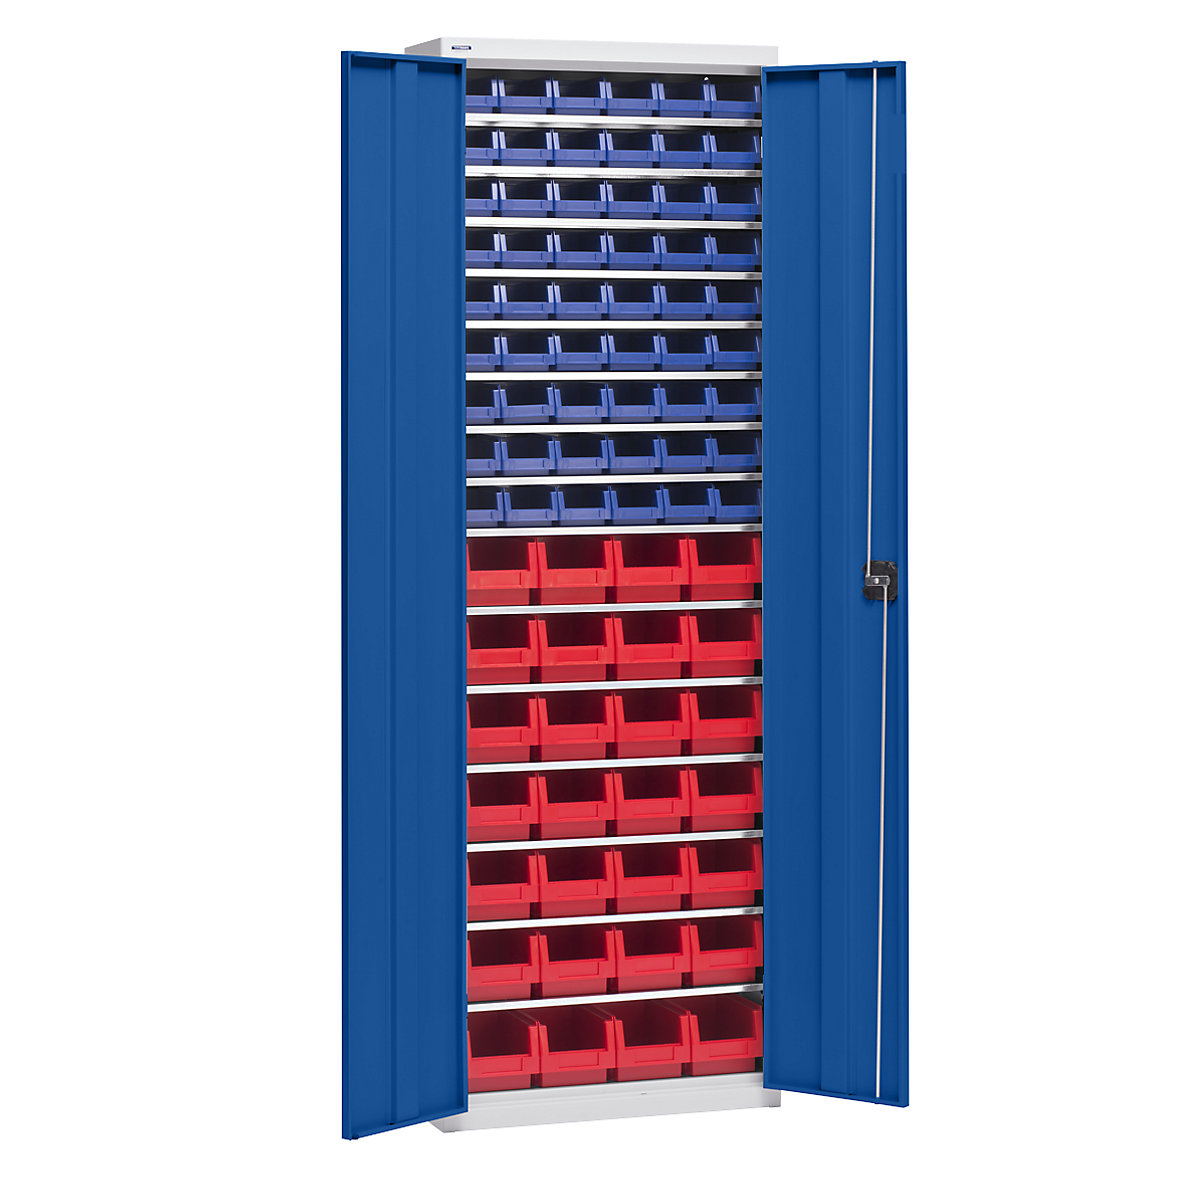 Materiaalkast met magazijnbakken – eurokraft pro, hoogte 2000 mm, 15 legborden, lichtgrijs / gentiaanblauw-6